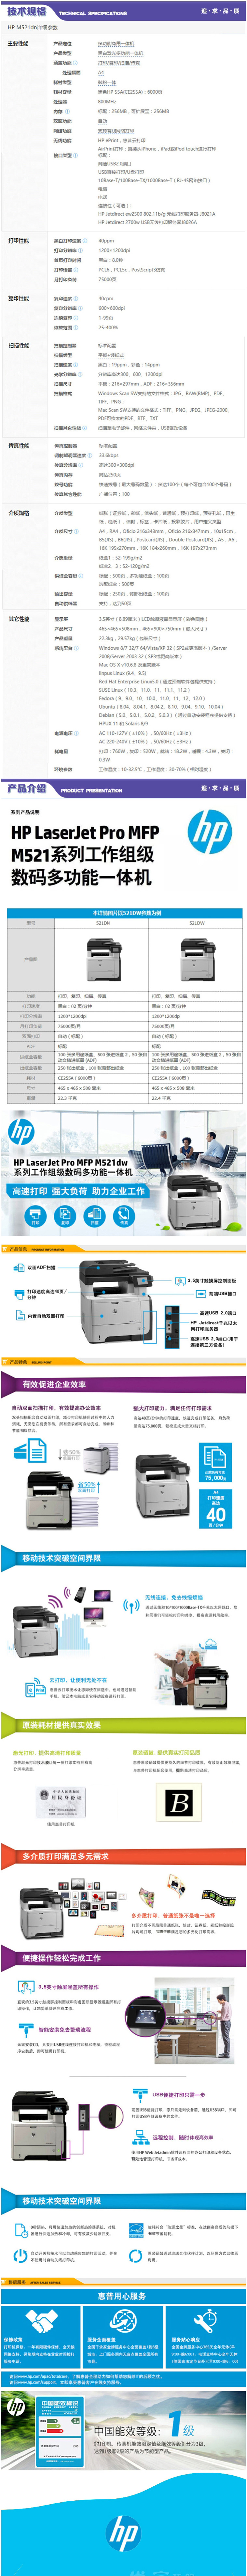 惠普 HP LaserJet Pro MFP M521dn Printer 多功能一体机 - 优宜巧.jpg